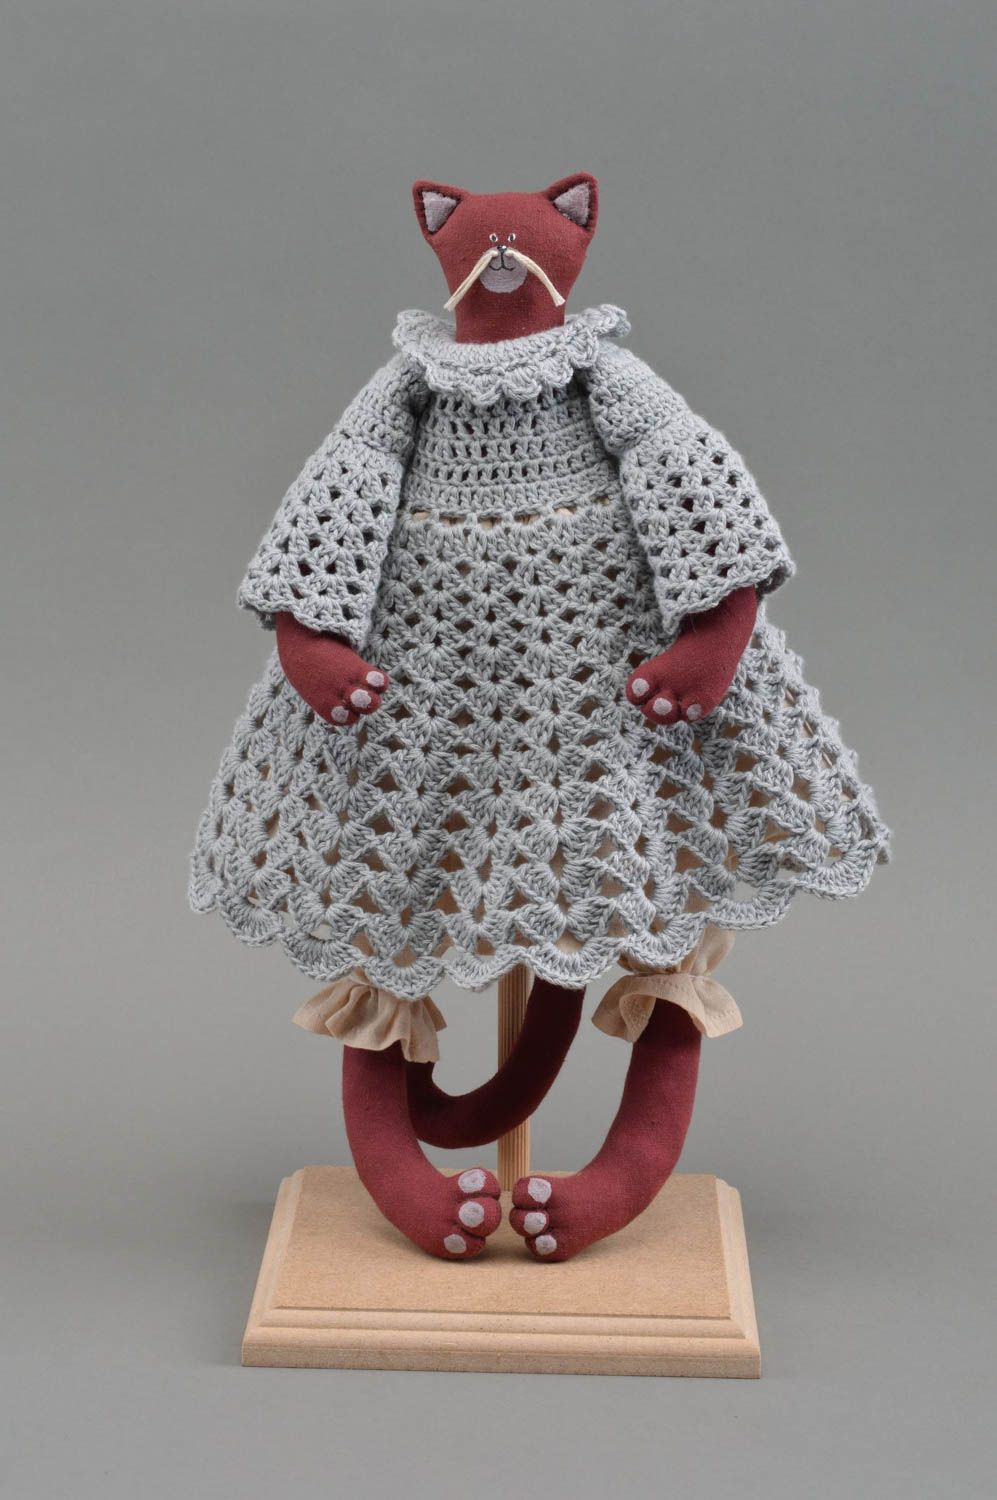 Textil Kuscheltier Katze rot im gehäkelten Kleid handmade schön originell foto 2